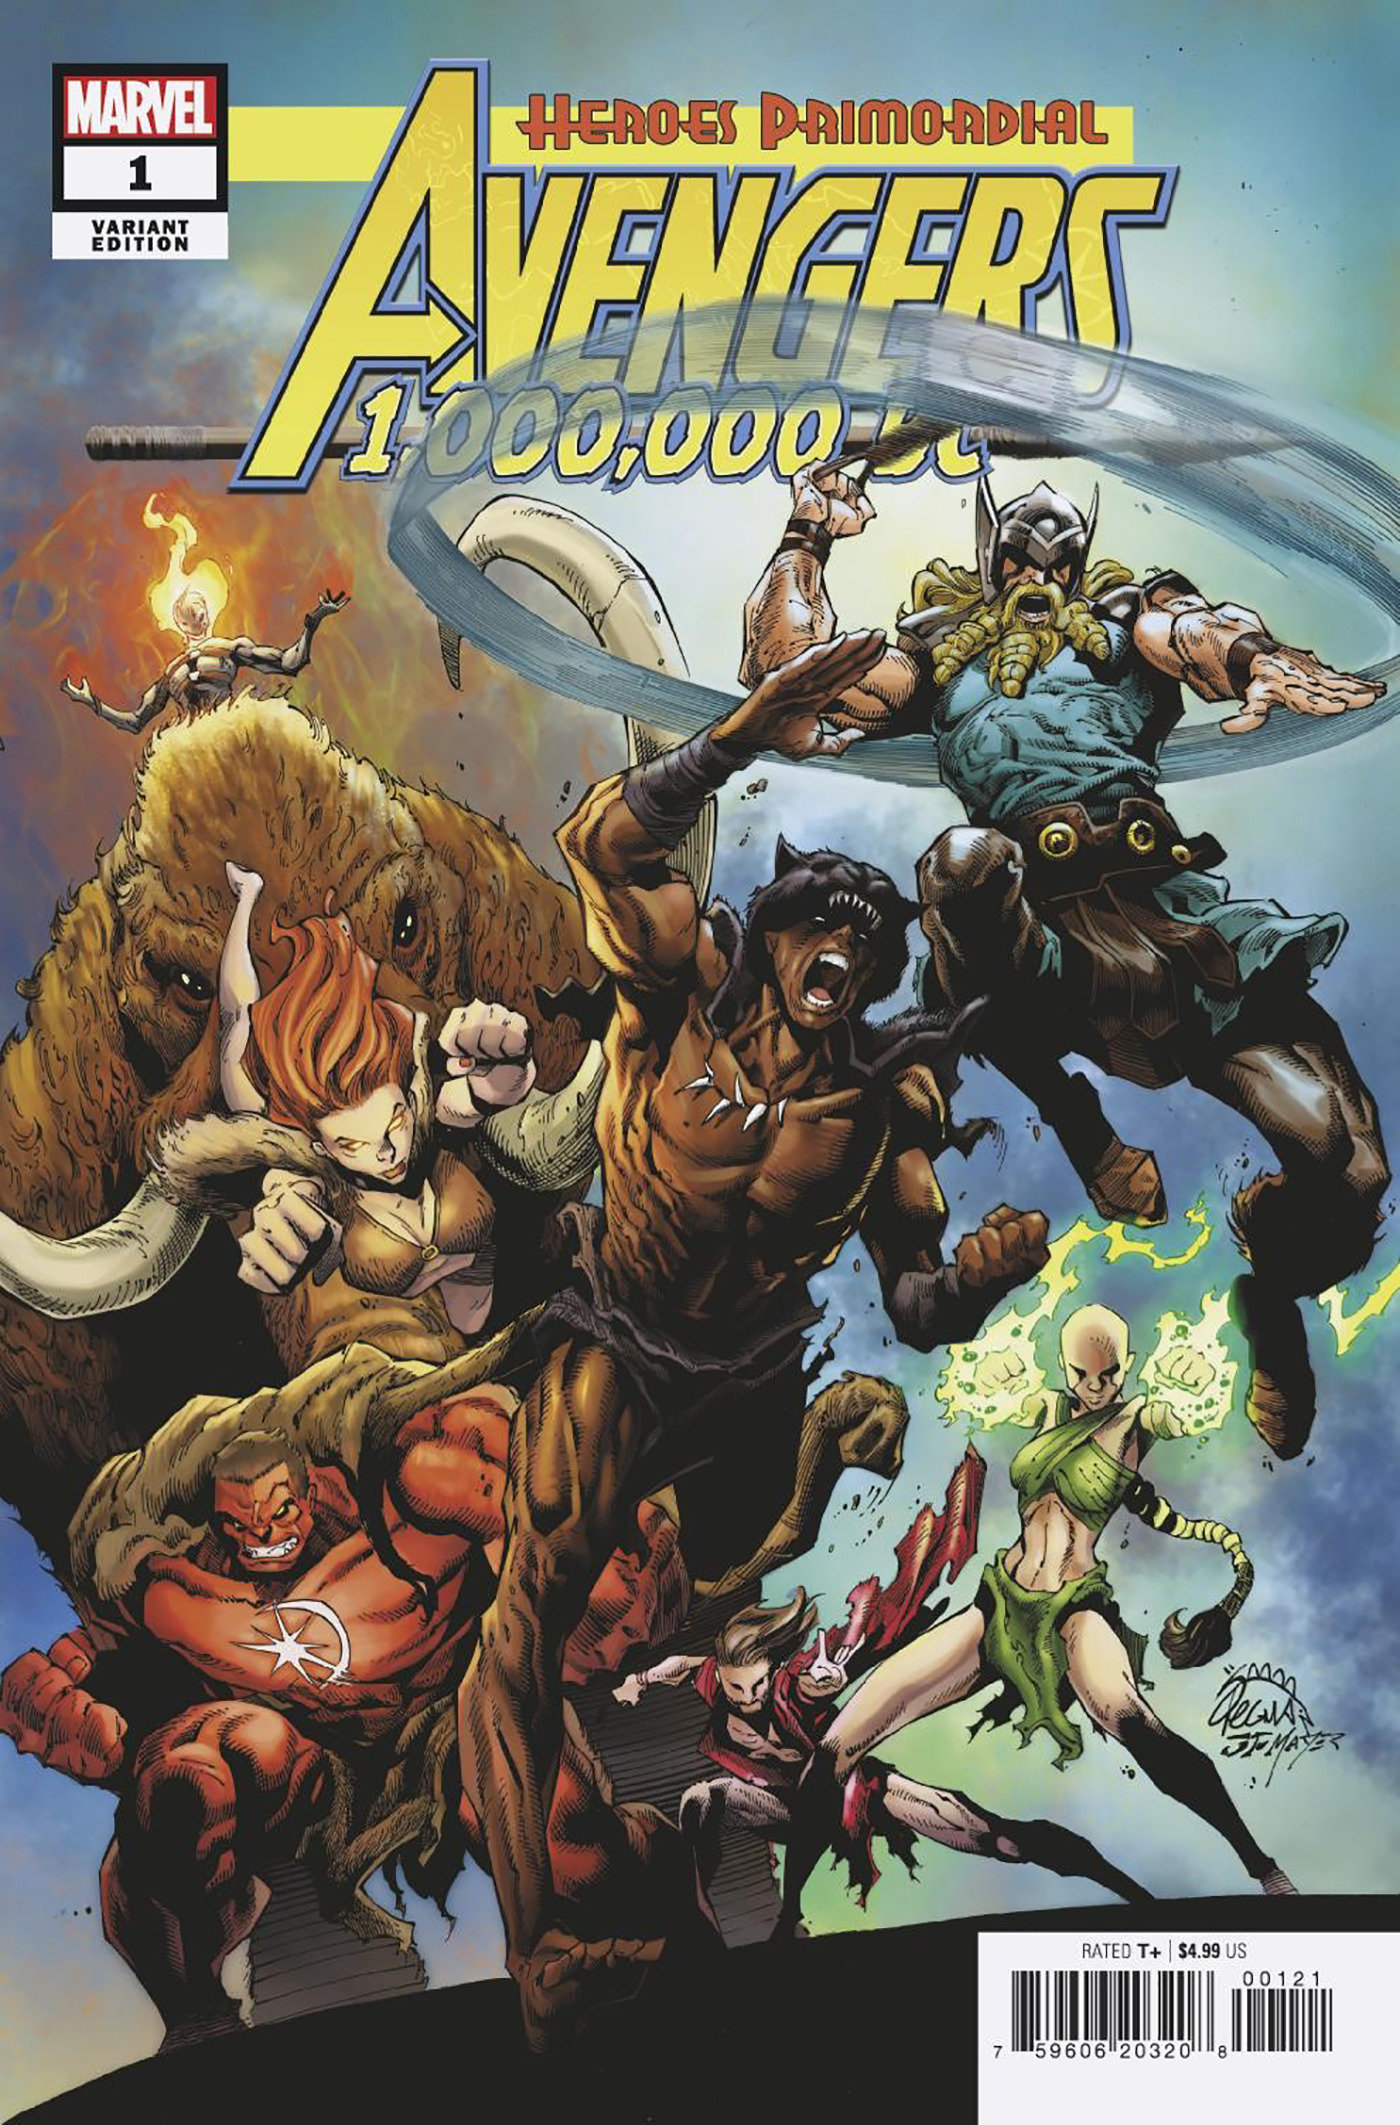 Avengers 1,000,000 Bc #1 Stegman Prehistoric Homage Variant